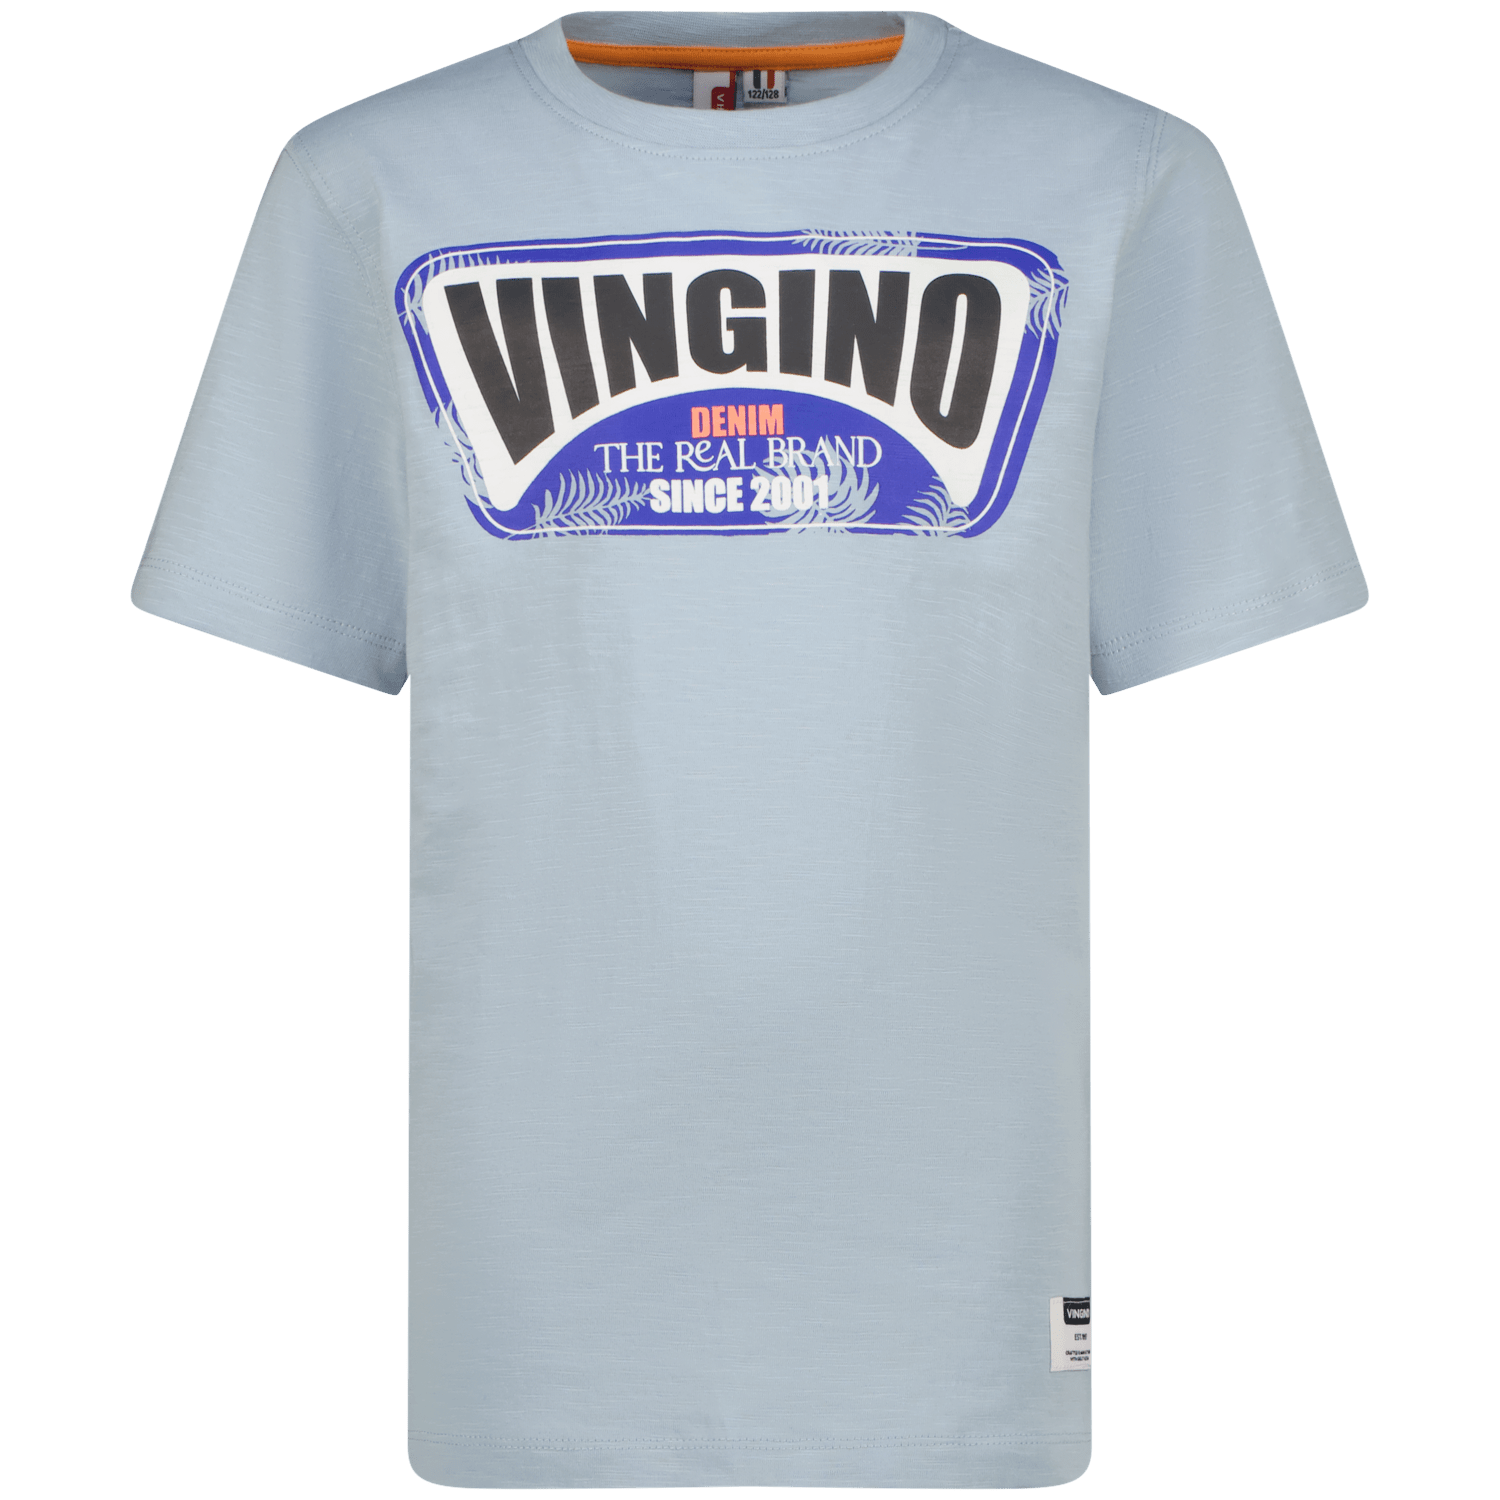 VINGINO T-Shirt Hefor